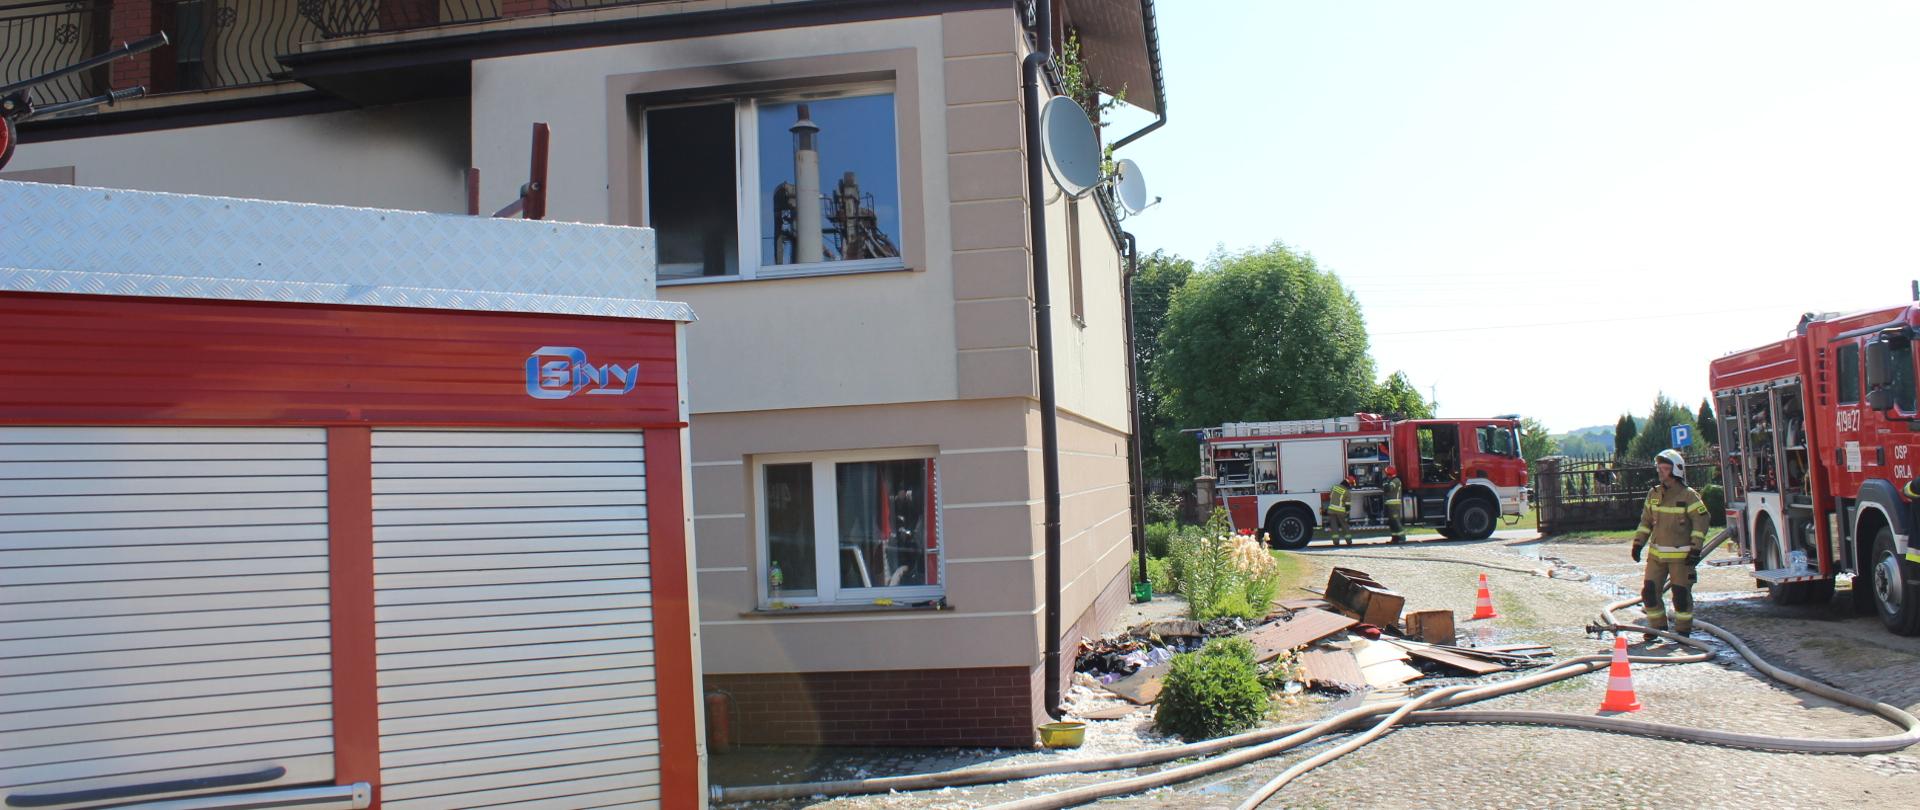 Pożar budynku mieszkalnego w Koszelach - samochody ratowniczo-gaśnicze stojące wokół budynku, w którym miał miejsce pożar.